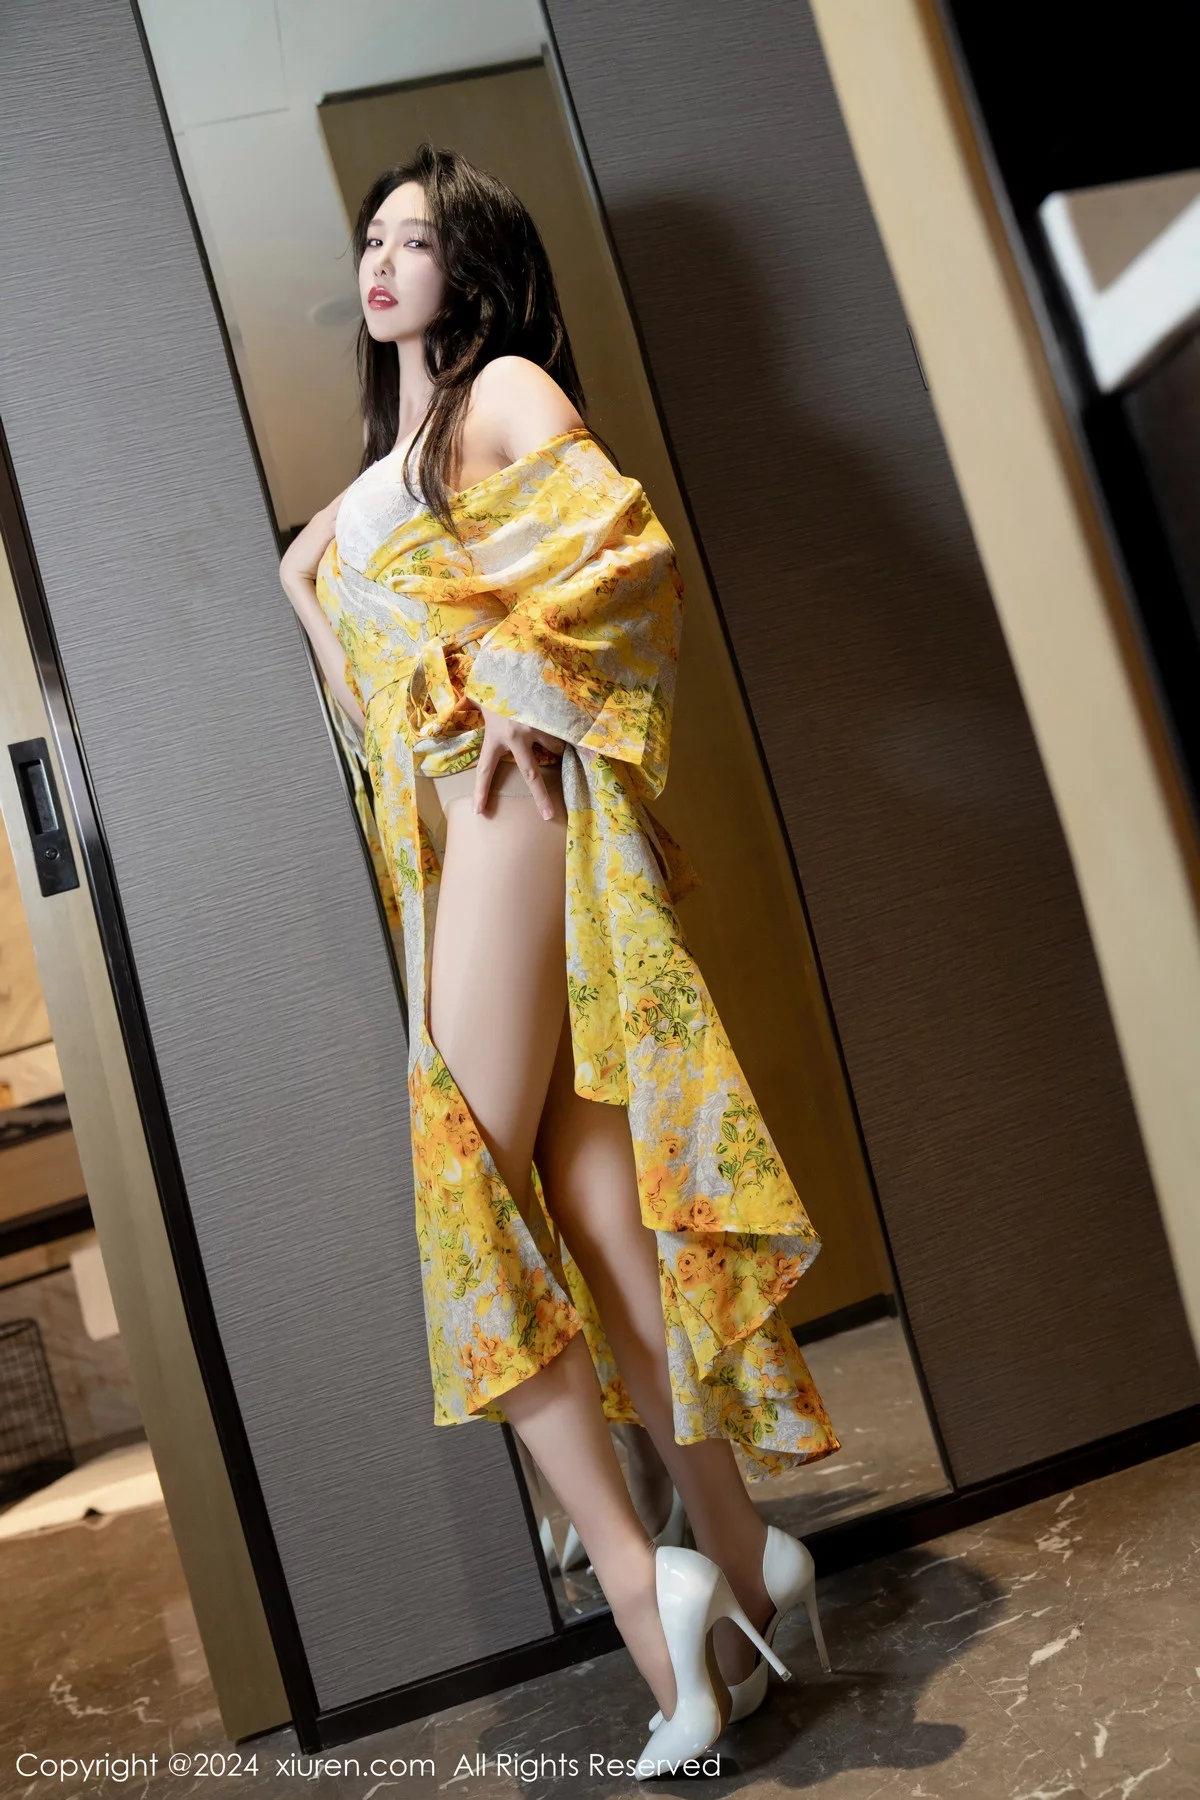 [XiuRen秀人网]第7981期_模特利世情节拍摄性感黄色连衣裙露白色蕾丝内衣完美诱惑写真99P